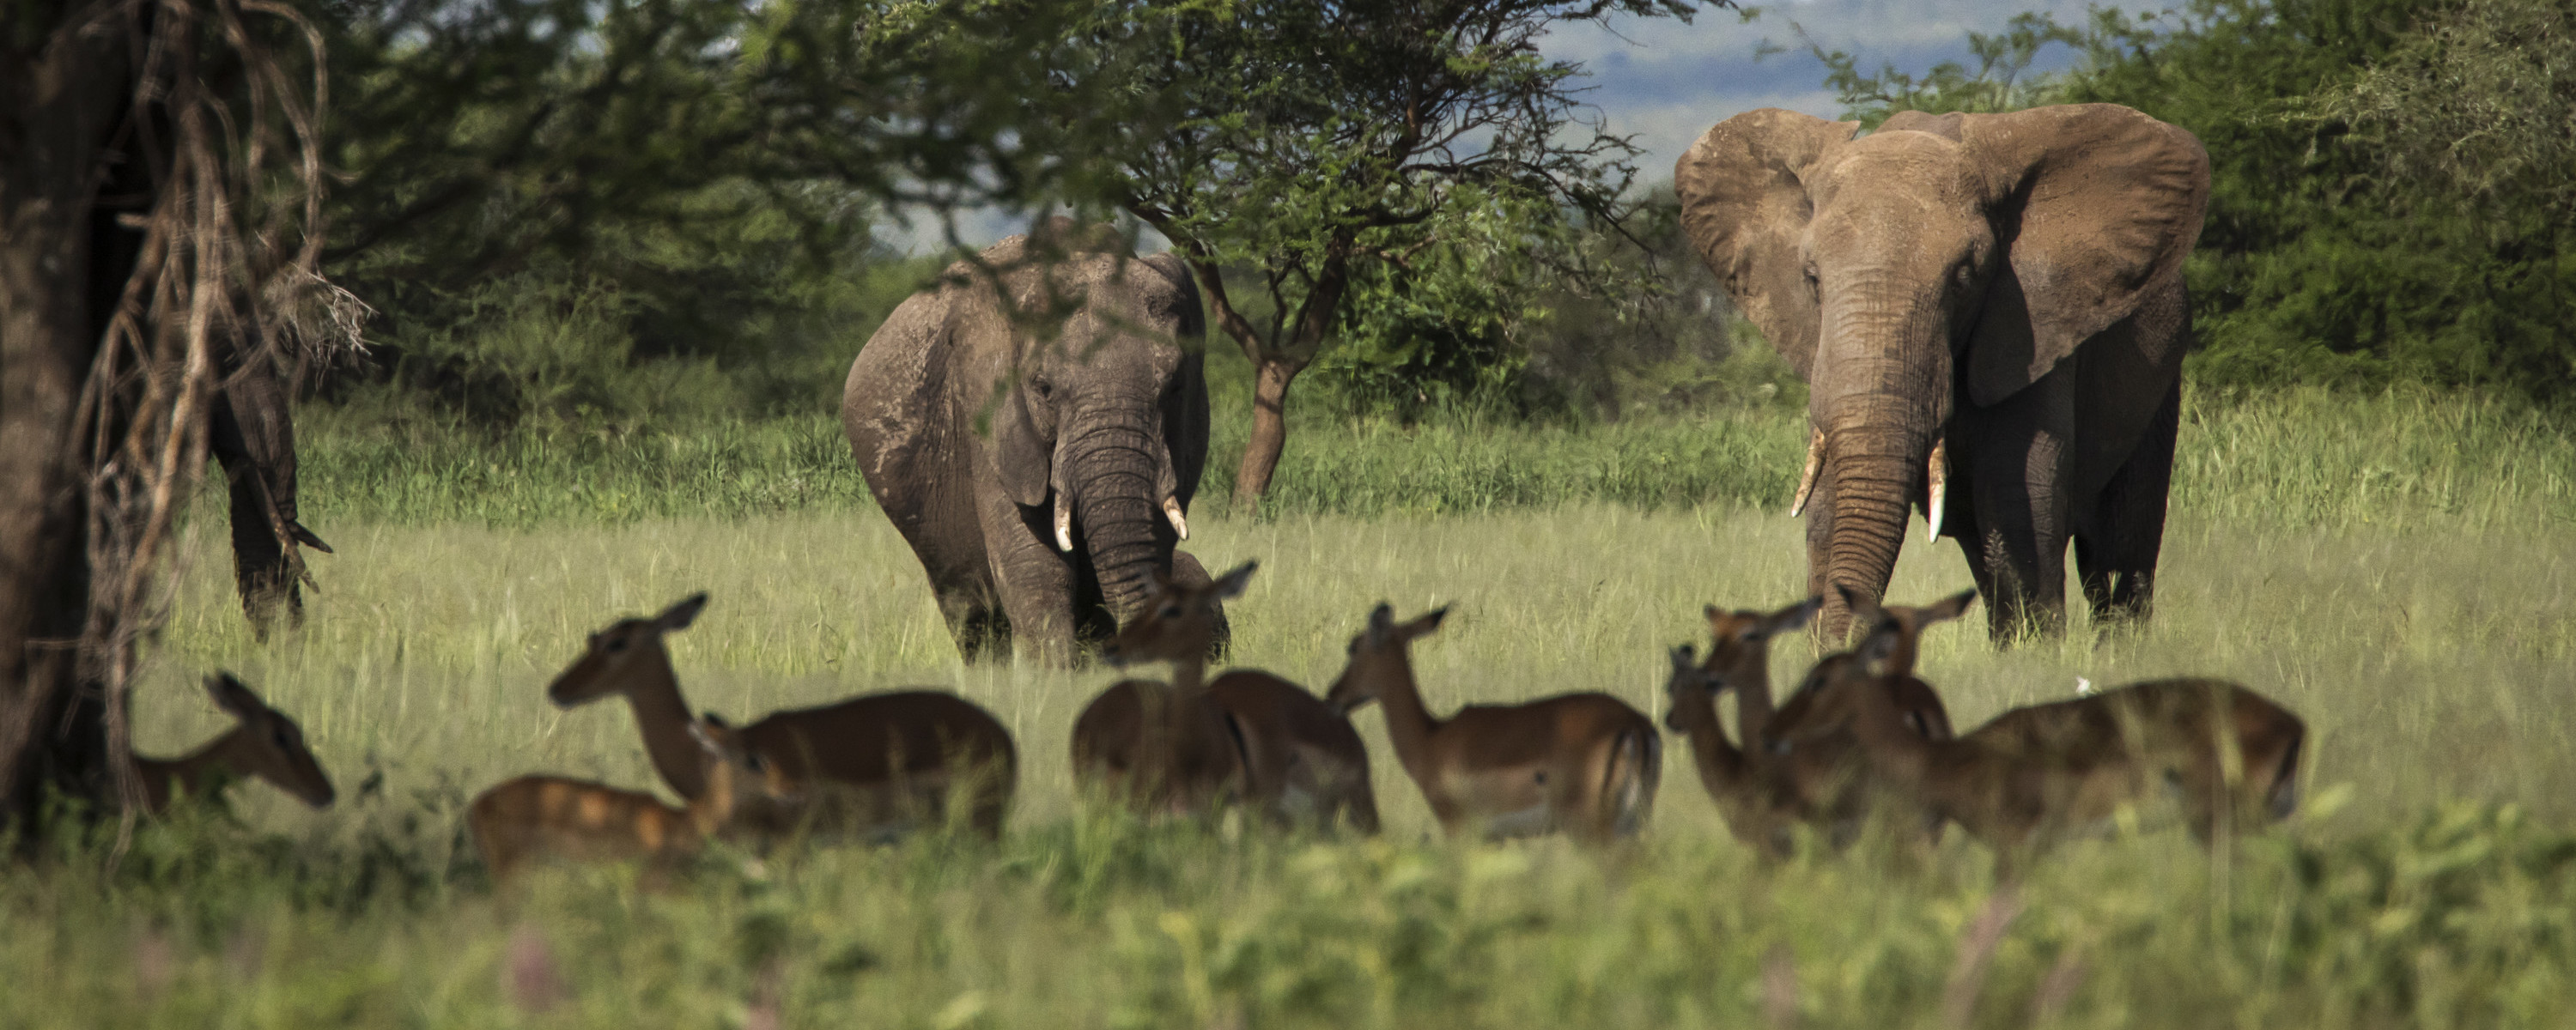 Vi drar også på klassisk safari i Ngorongoro-krateret